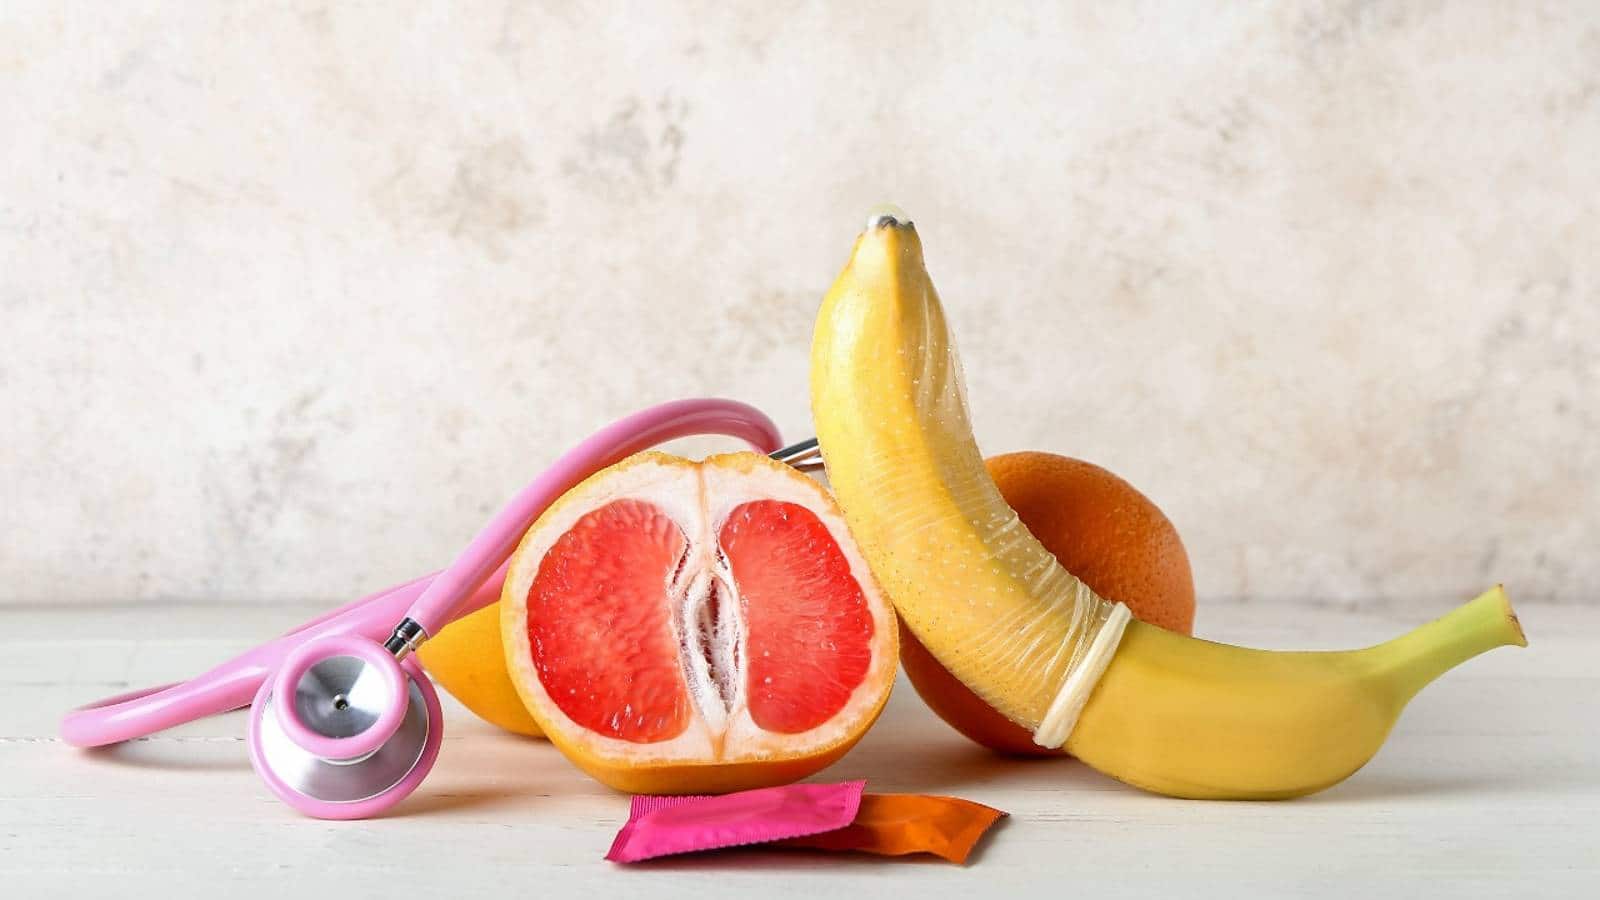 Side effect of using foods for masturbation or self pleasure.- यहां जानिए सेल्फ प्लेजर या हस्तमैथुन के लिए फल-सब्जियों का इस्तेमाल करने के जोखिम।